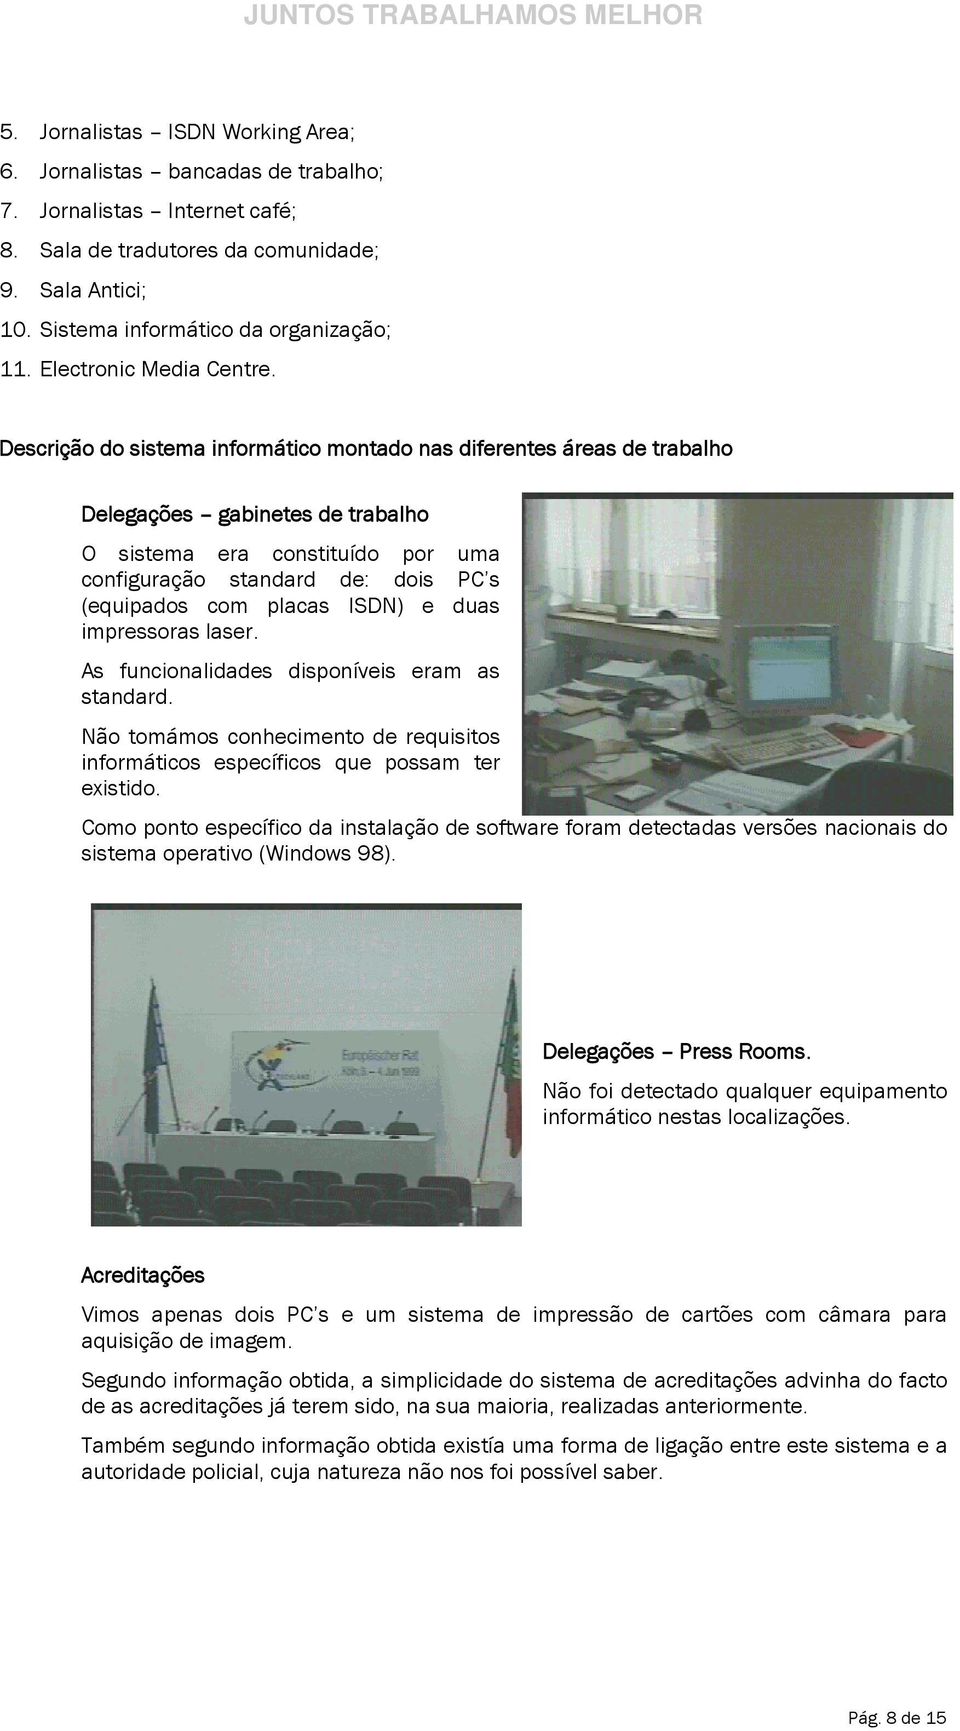 Descrição do sistema informático montado nas diferentes áreas de trabalho Delegações gabinetes de trabalho O sistema era constituído por uma configuração standard de: dois s (equipados com placas